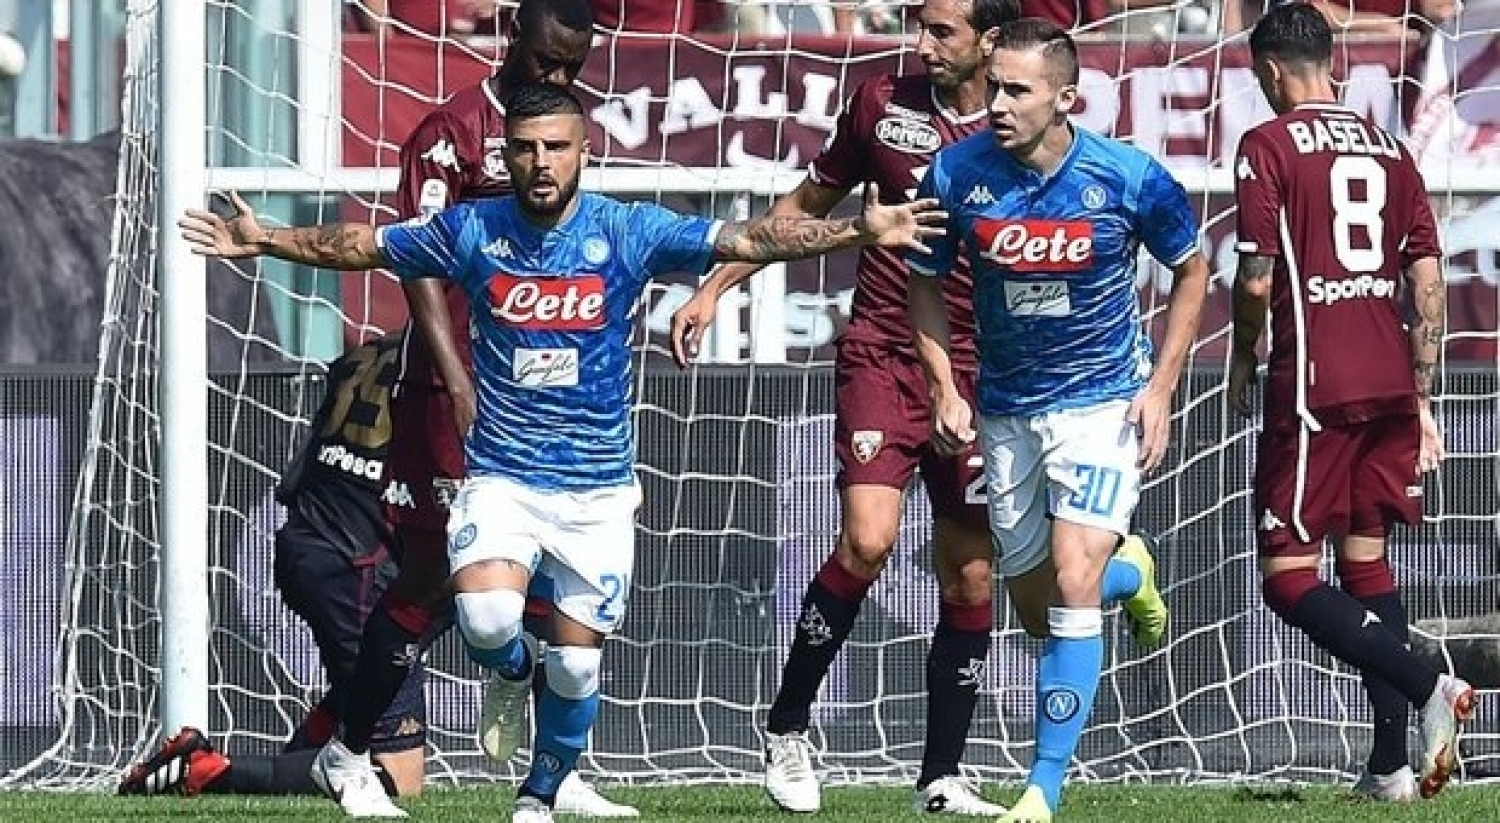 Torino - Napoli, i precedenti: 0 - 0 nell' ultimo match